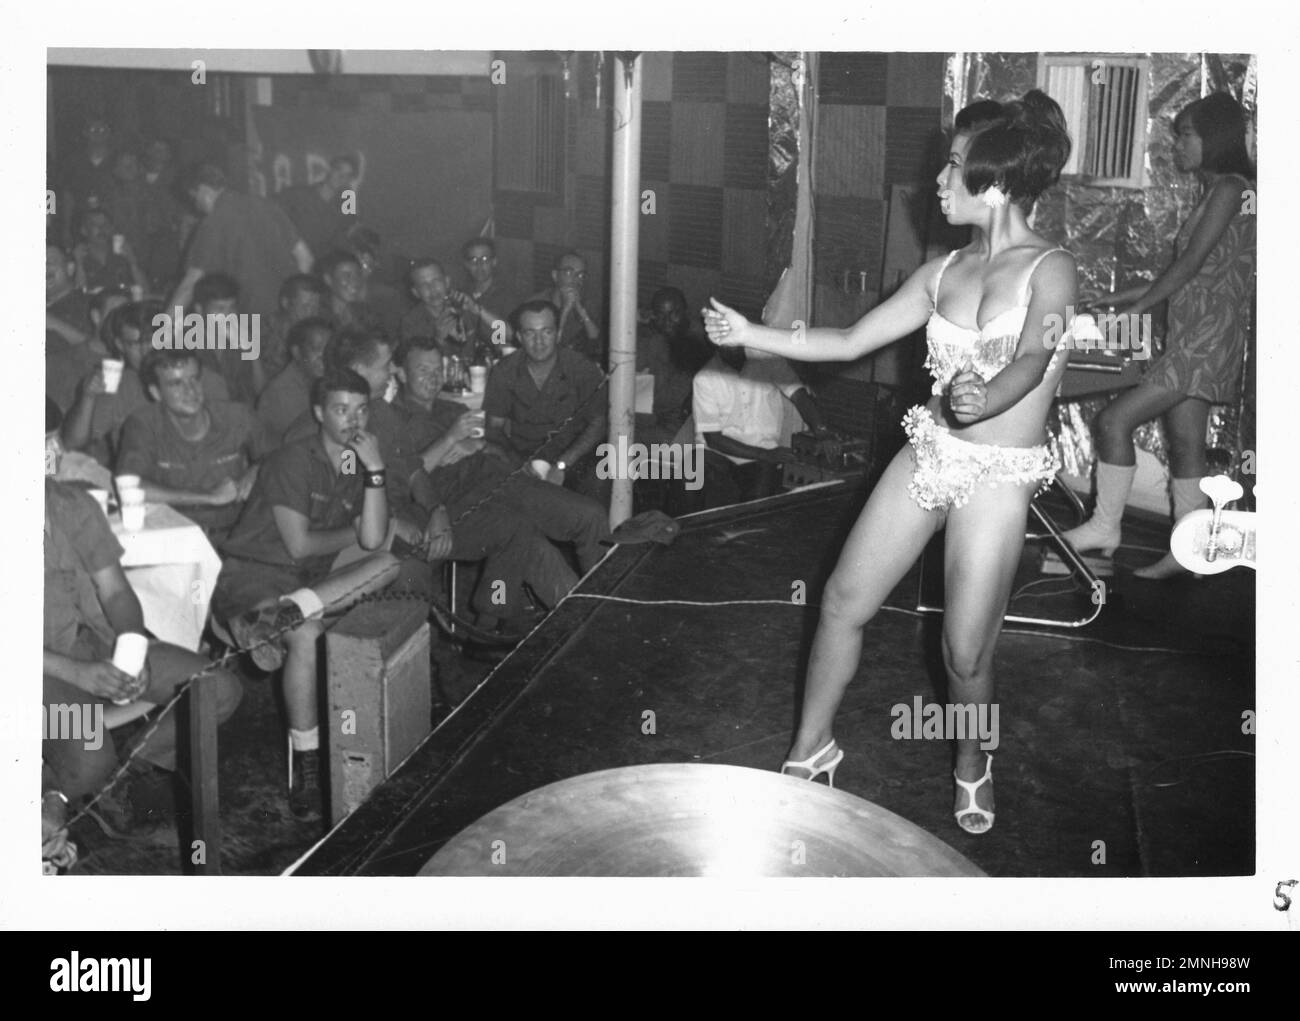 [Naval Support Activity Hospital Danang, Vietnam]. 71. Geburtstagsparty des Krankenhauskorps am 16. Juni 1969. Frau, die im Bikini tanzt, um die Truppen während des Vietnamkriegs zu unterhalten. Stockfoto